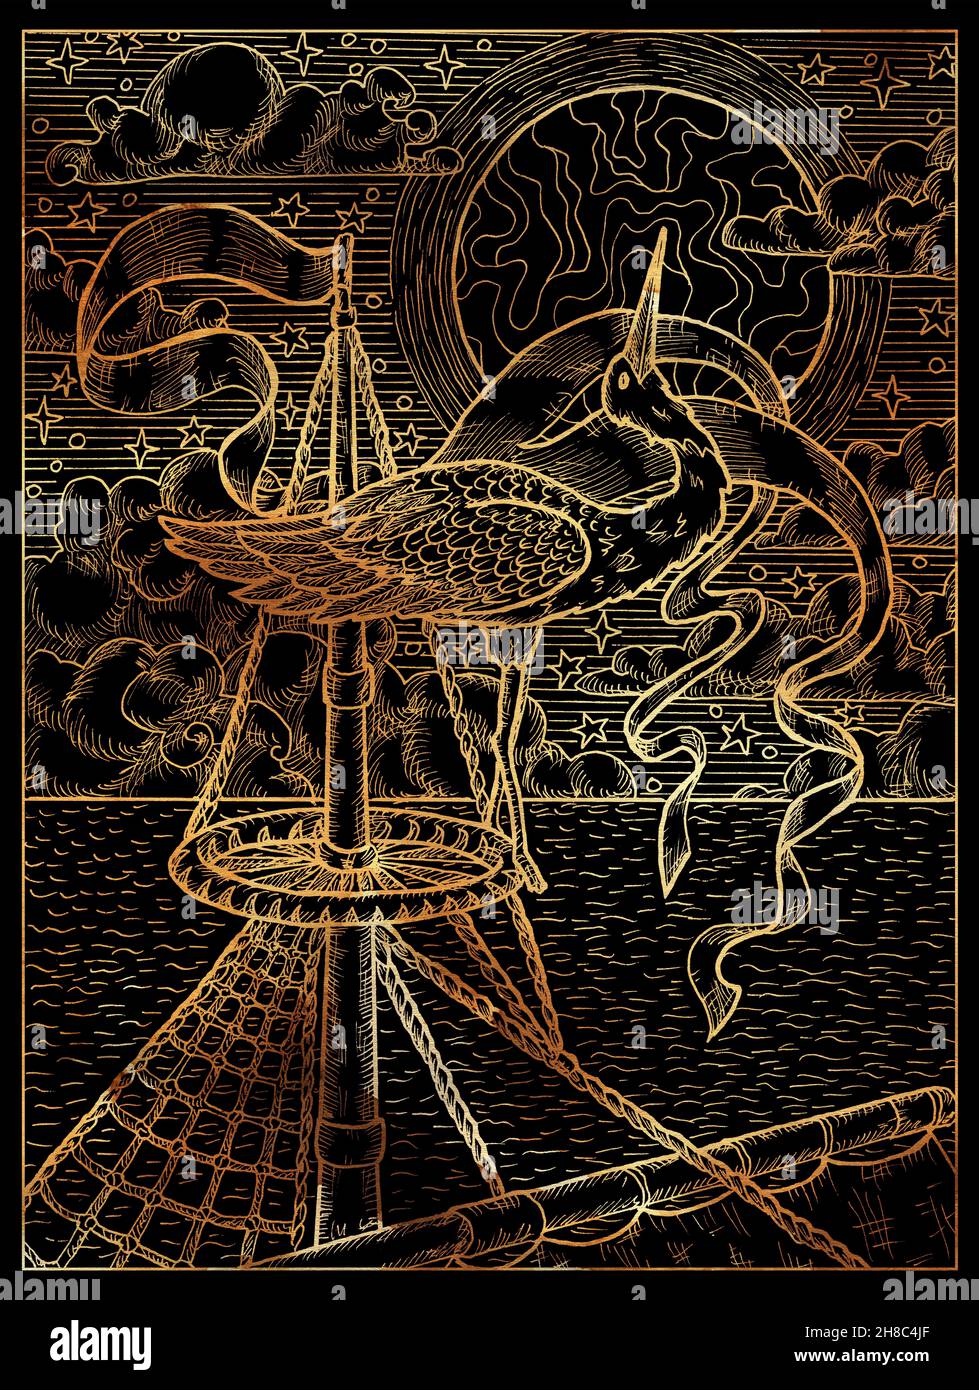 Schwarz-goldene Illustration eines eleganten Storchs im Nest auf Schiffsmast vor dem Hintergrund von Meer, Mond und Wolken. Vintage-Zeichnungen, marine concep Stockfoto